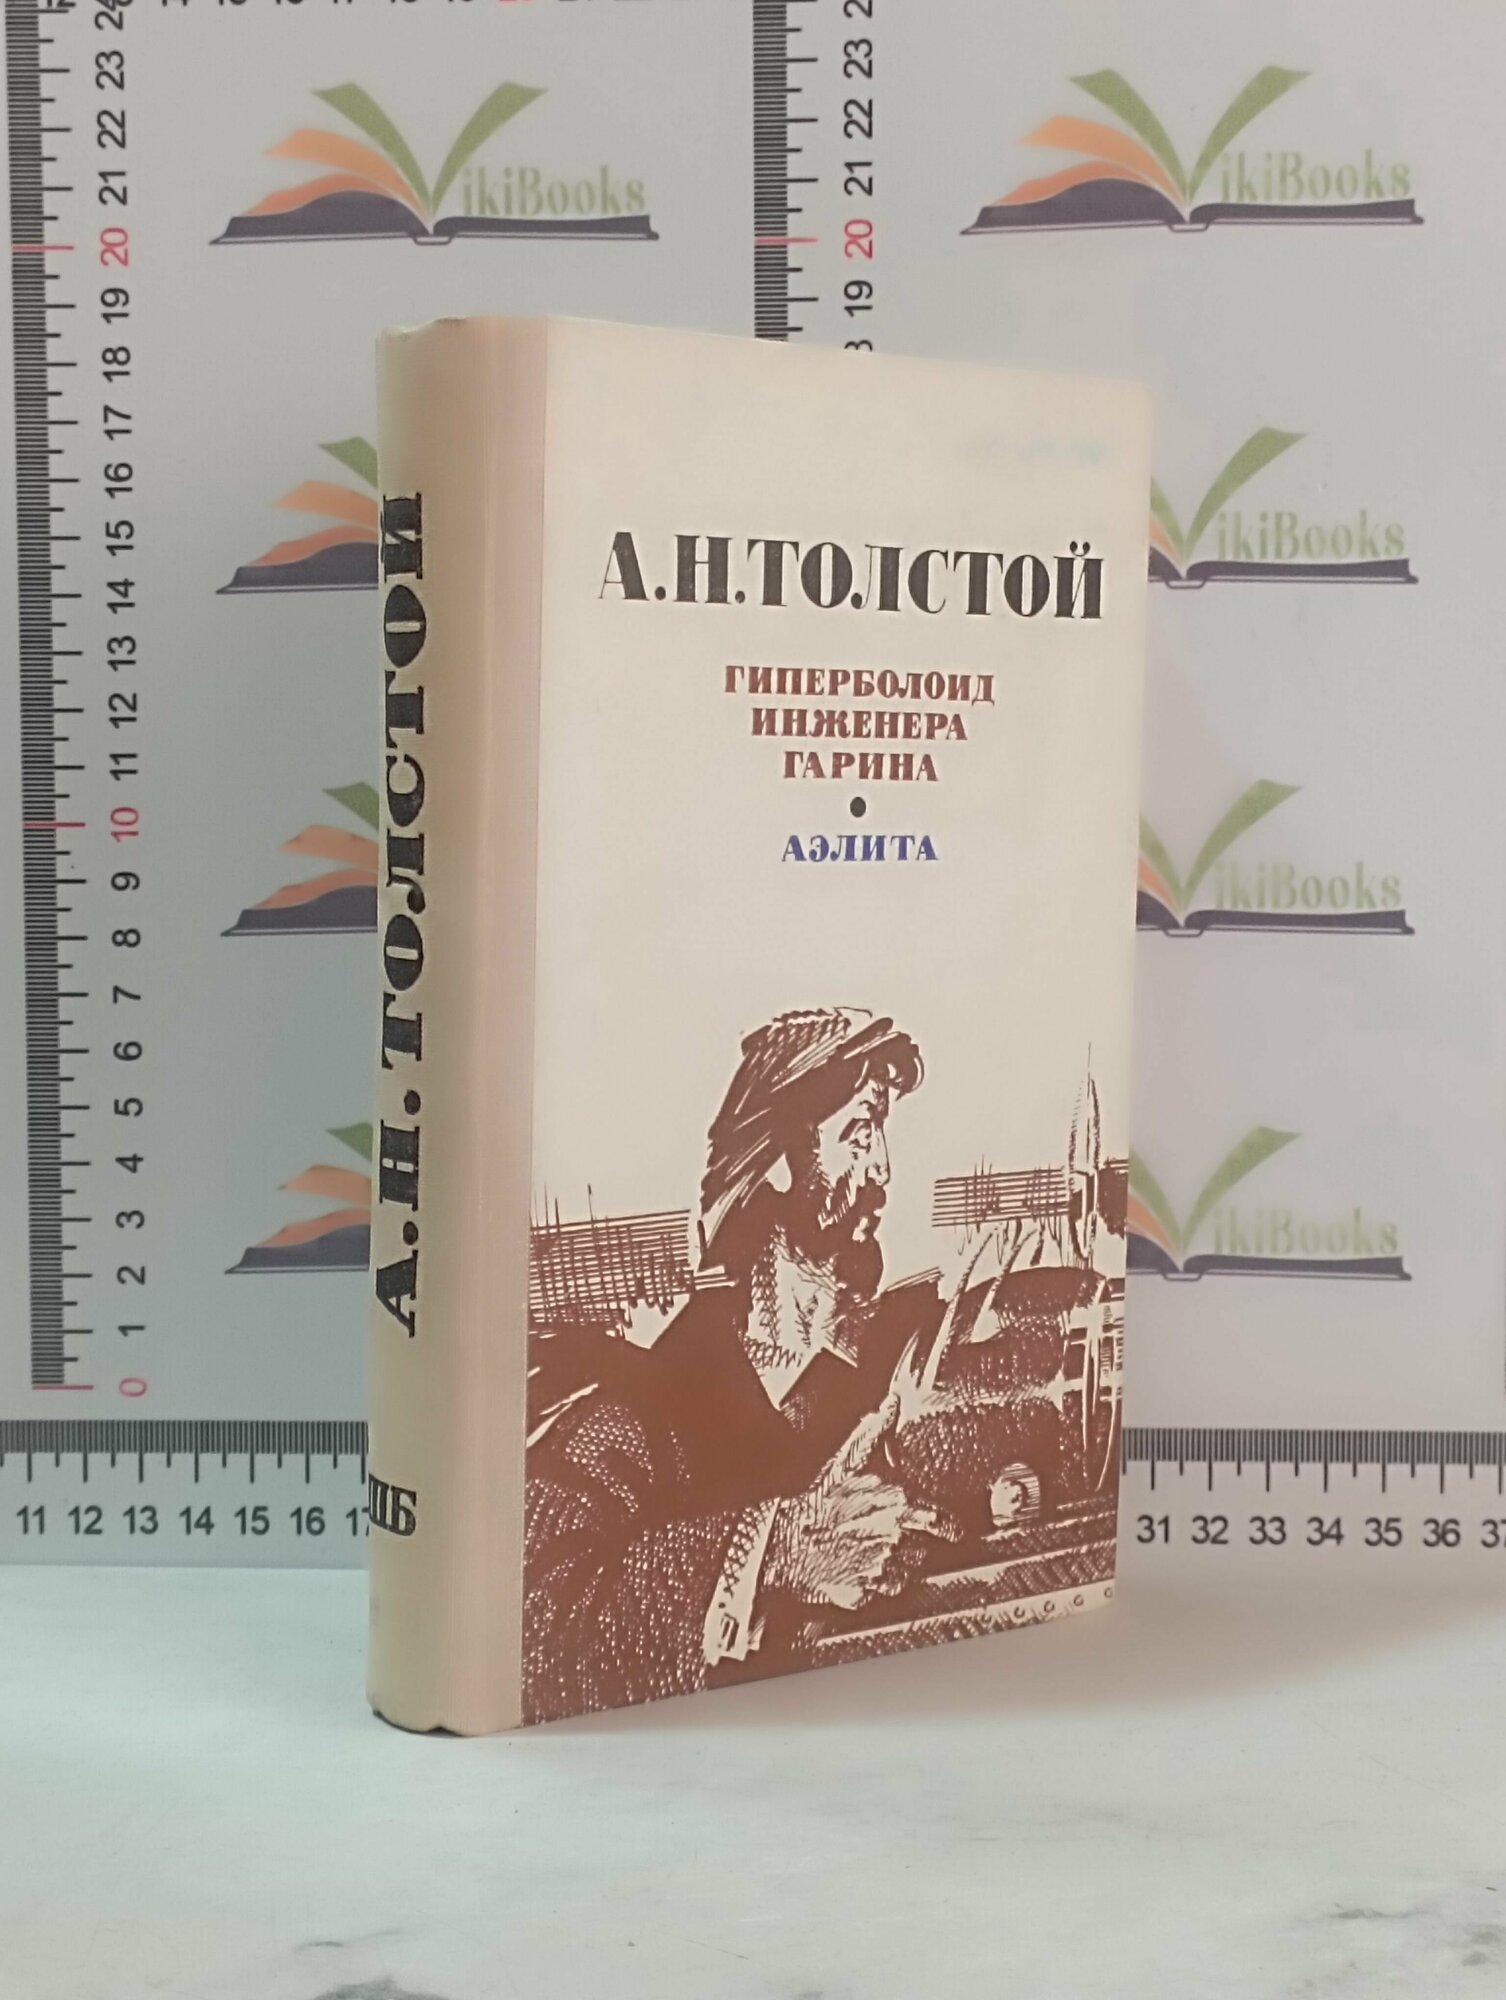 А. Н. Толстой / Гиперболоид инженера Гарина / Аэлита / 1977 г.